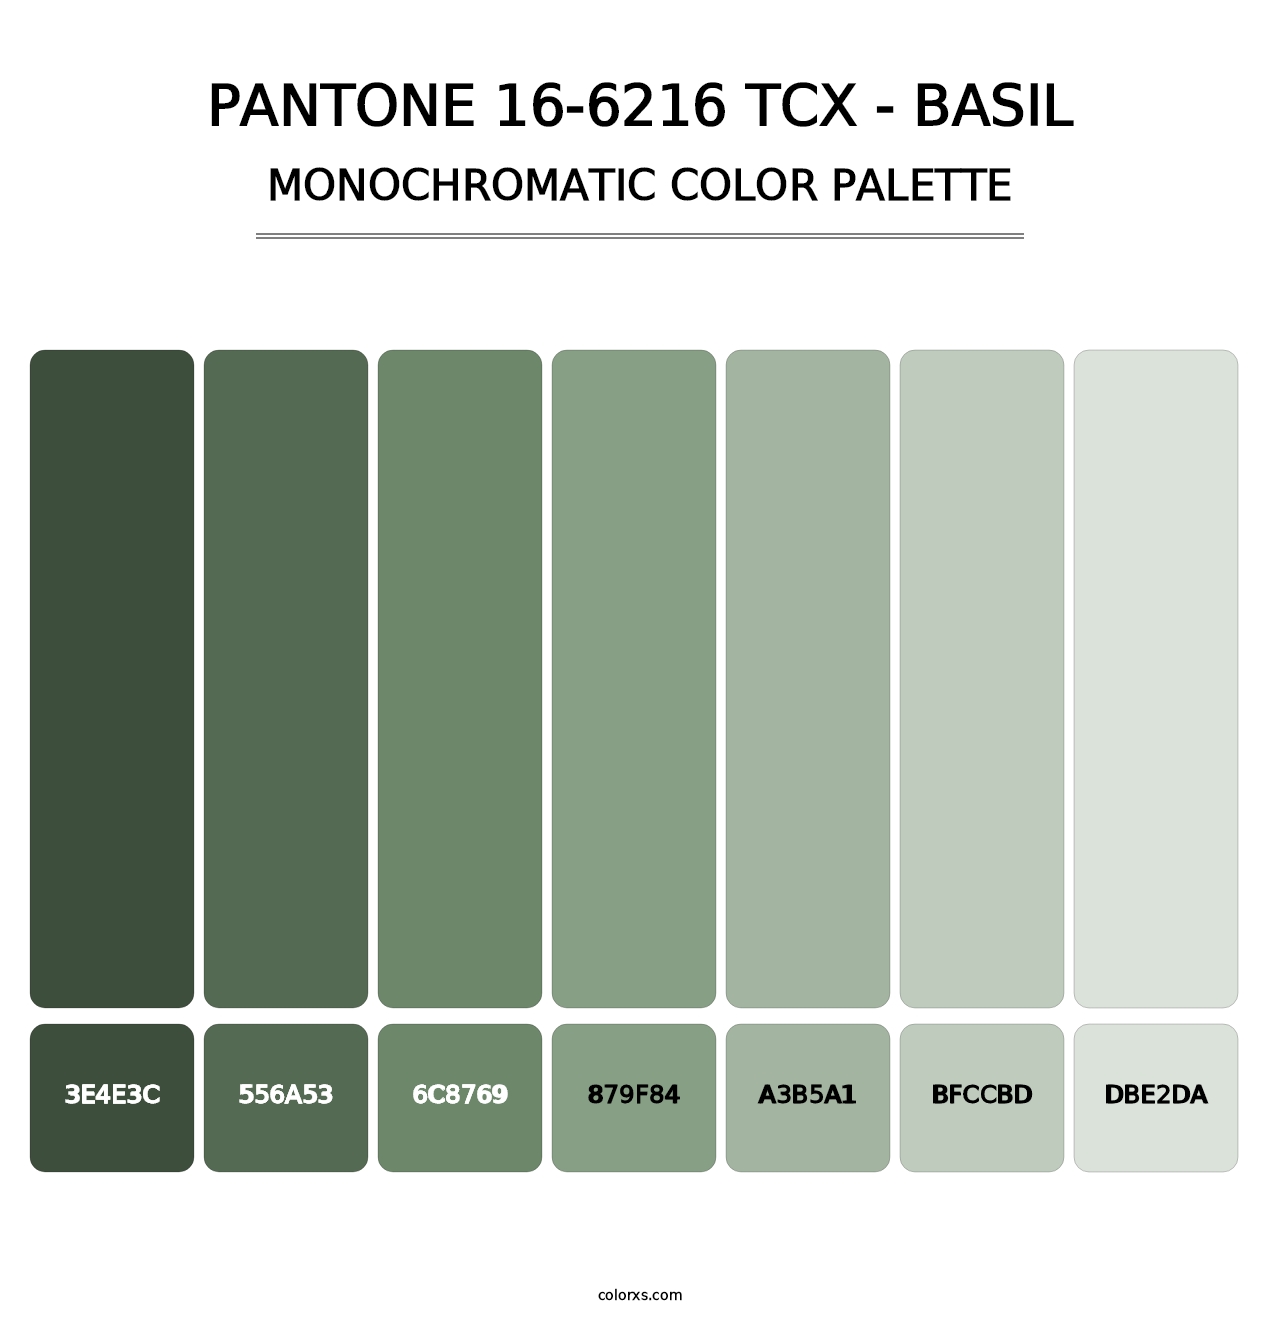 PANTONE 16-6216 TCX - Basil - Monochromatic Color Palette